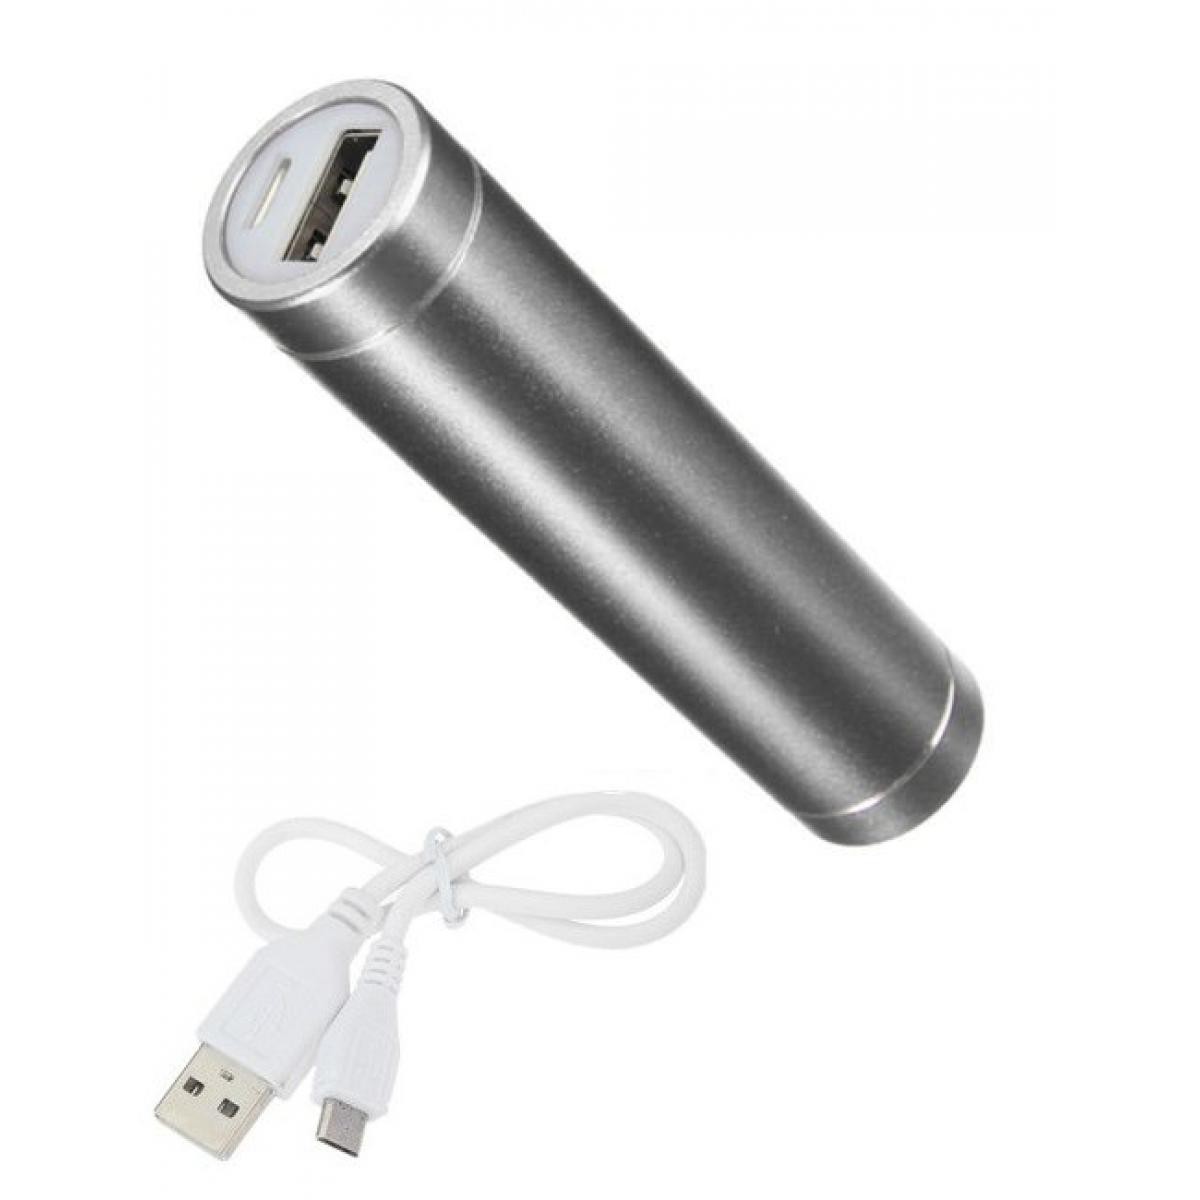 Shot - Batterie Chargeur Externe pour SAMSUNG Galaxy S20+ Power Bank 2600mAh avec Cable USB/Mirco USB Secours Telephone (ARGENT) - Chargeur secteur téléphone